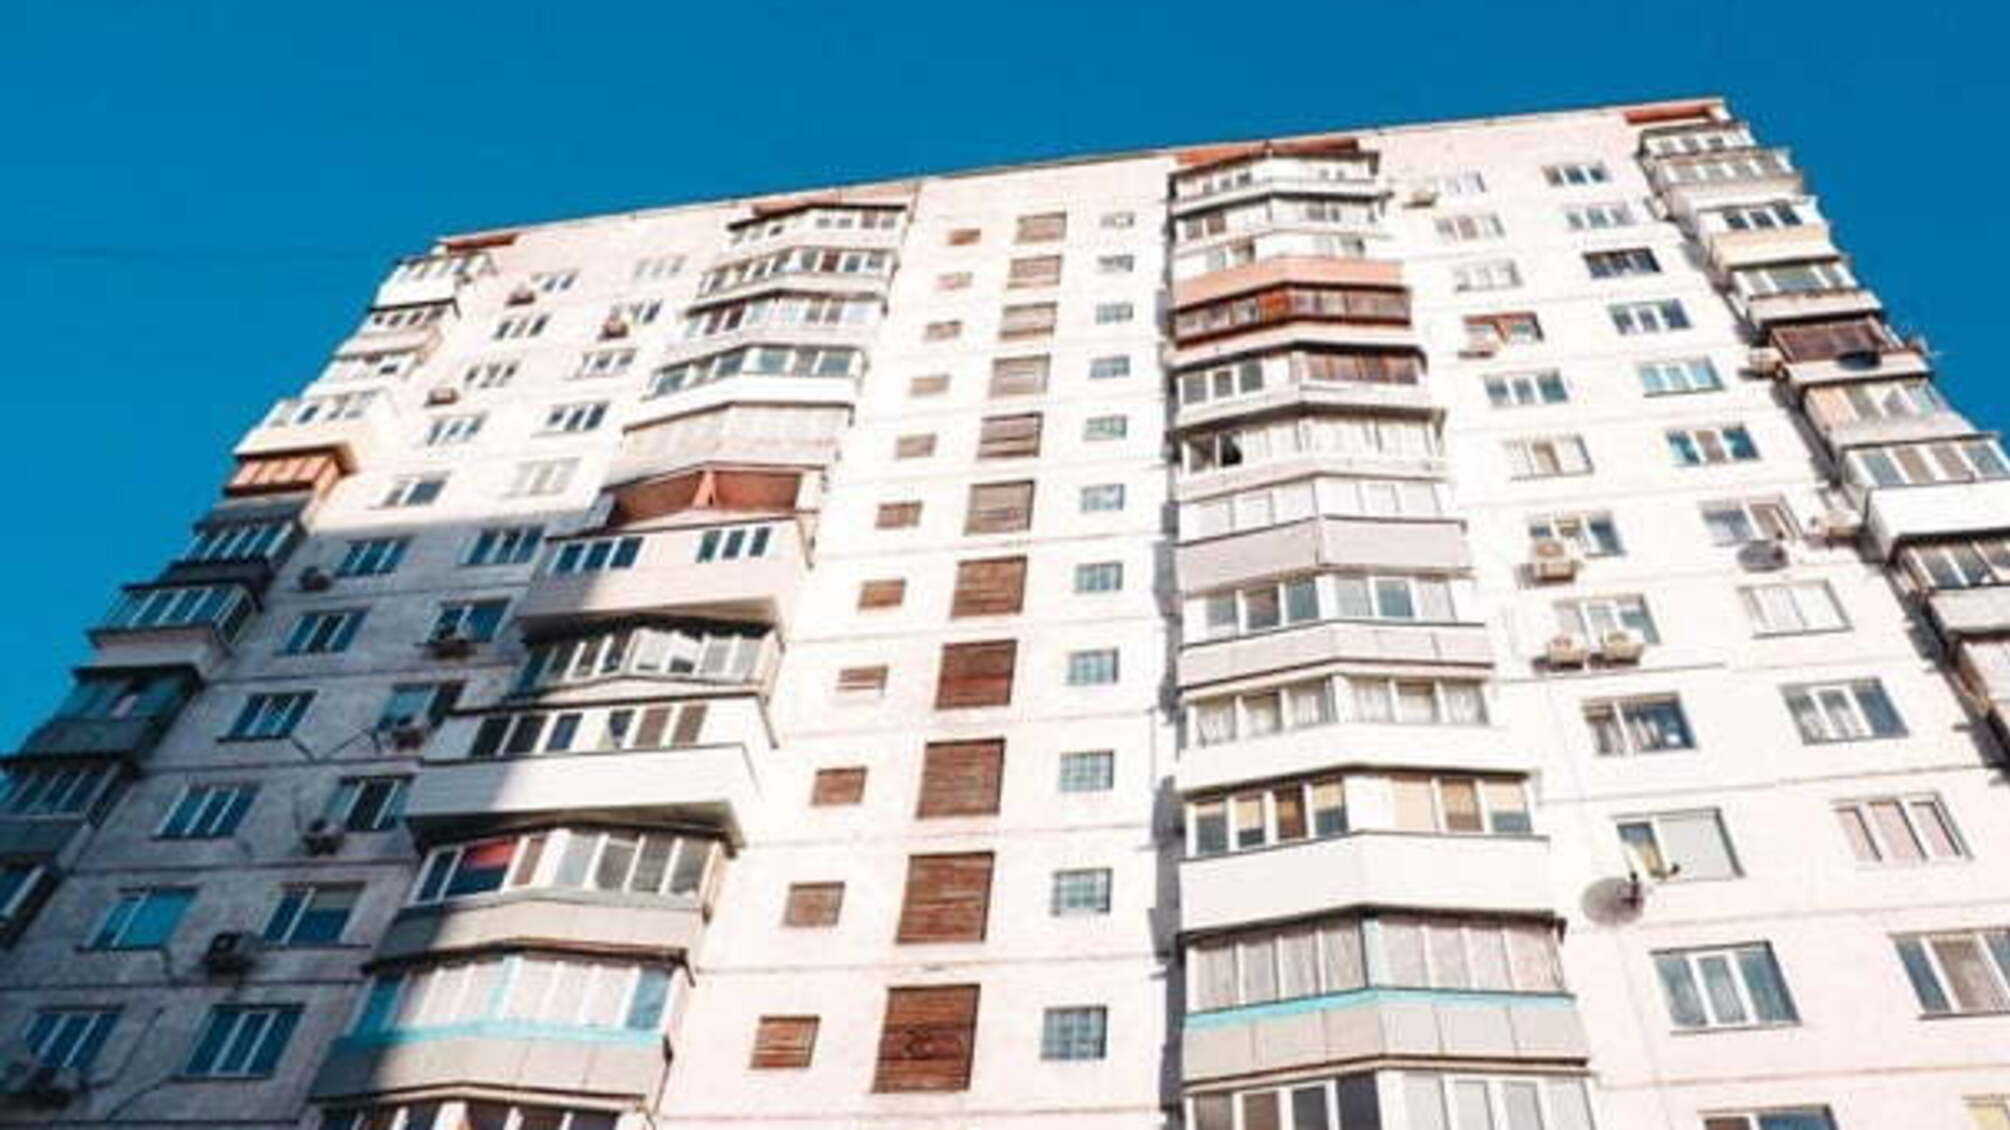 Невдале самогубство: у Києві хлопець вижив після падіння з дев'ятого поверху